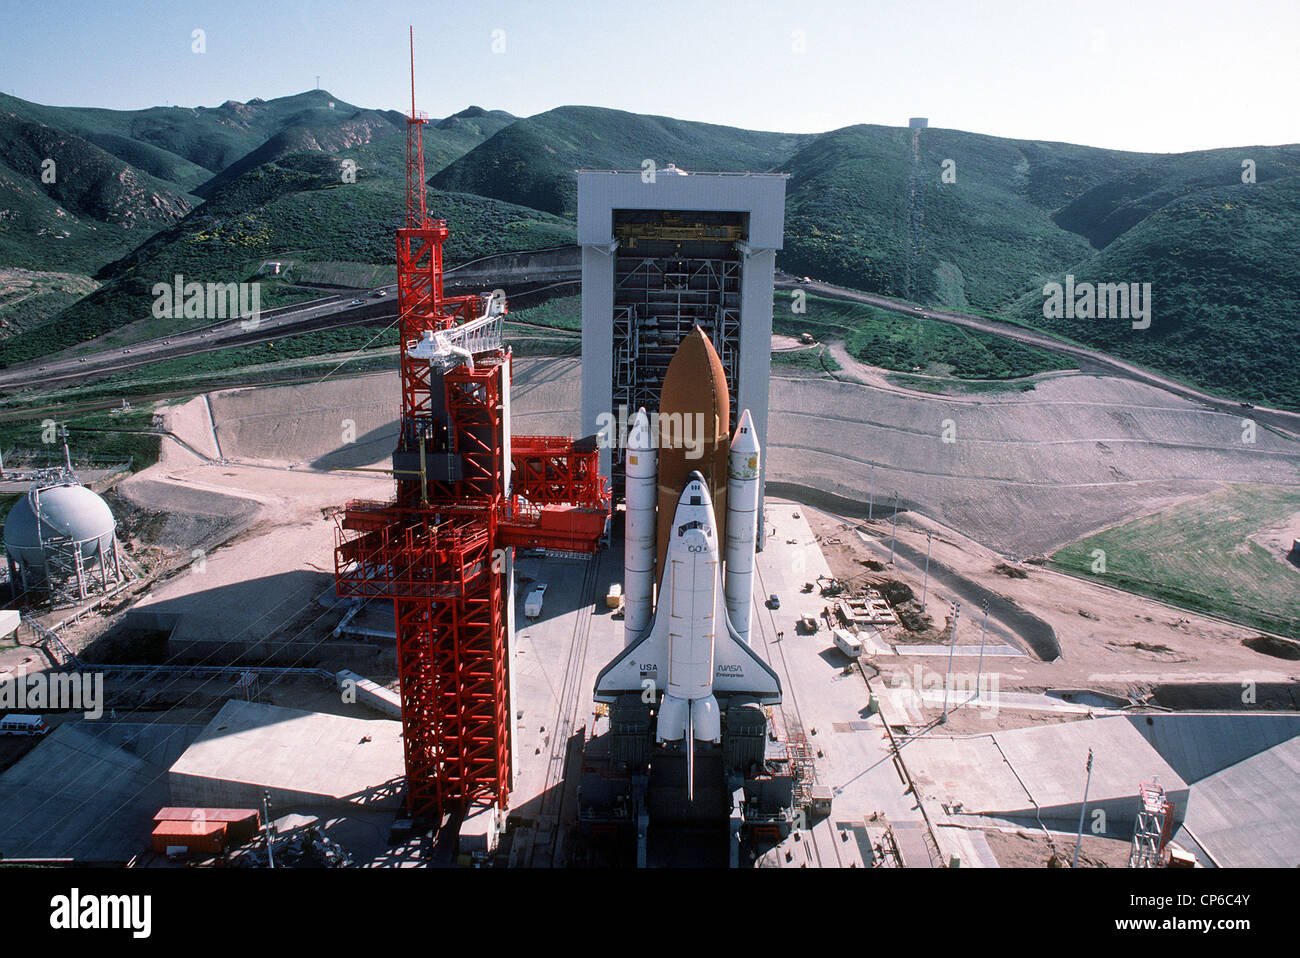 Vue d'ensemble à angle élevé de Space Shuttle Enterprise en position de lancement sur le SLC (Space Launch Complex) n° 6, communément appelé « SLICK 6 », lors des contrôles prêts à démarrer pour vérifier les procédures de lancement. Banque D'Images